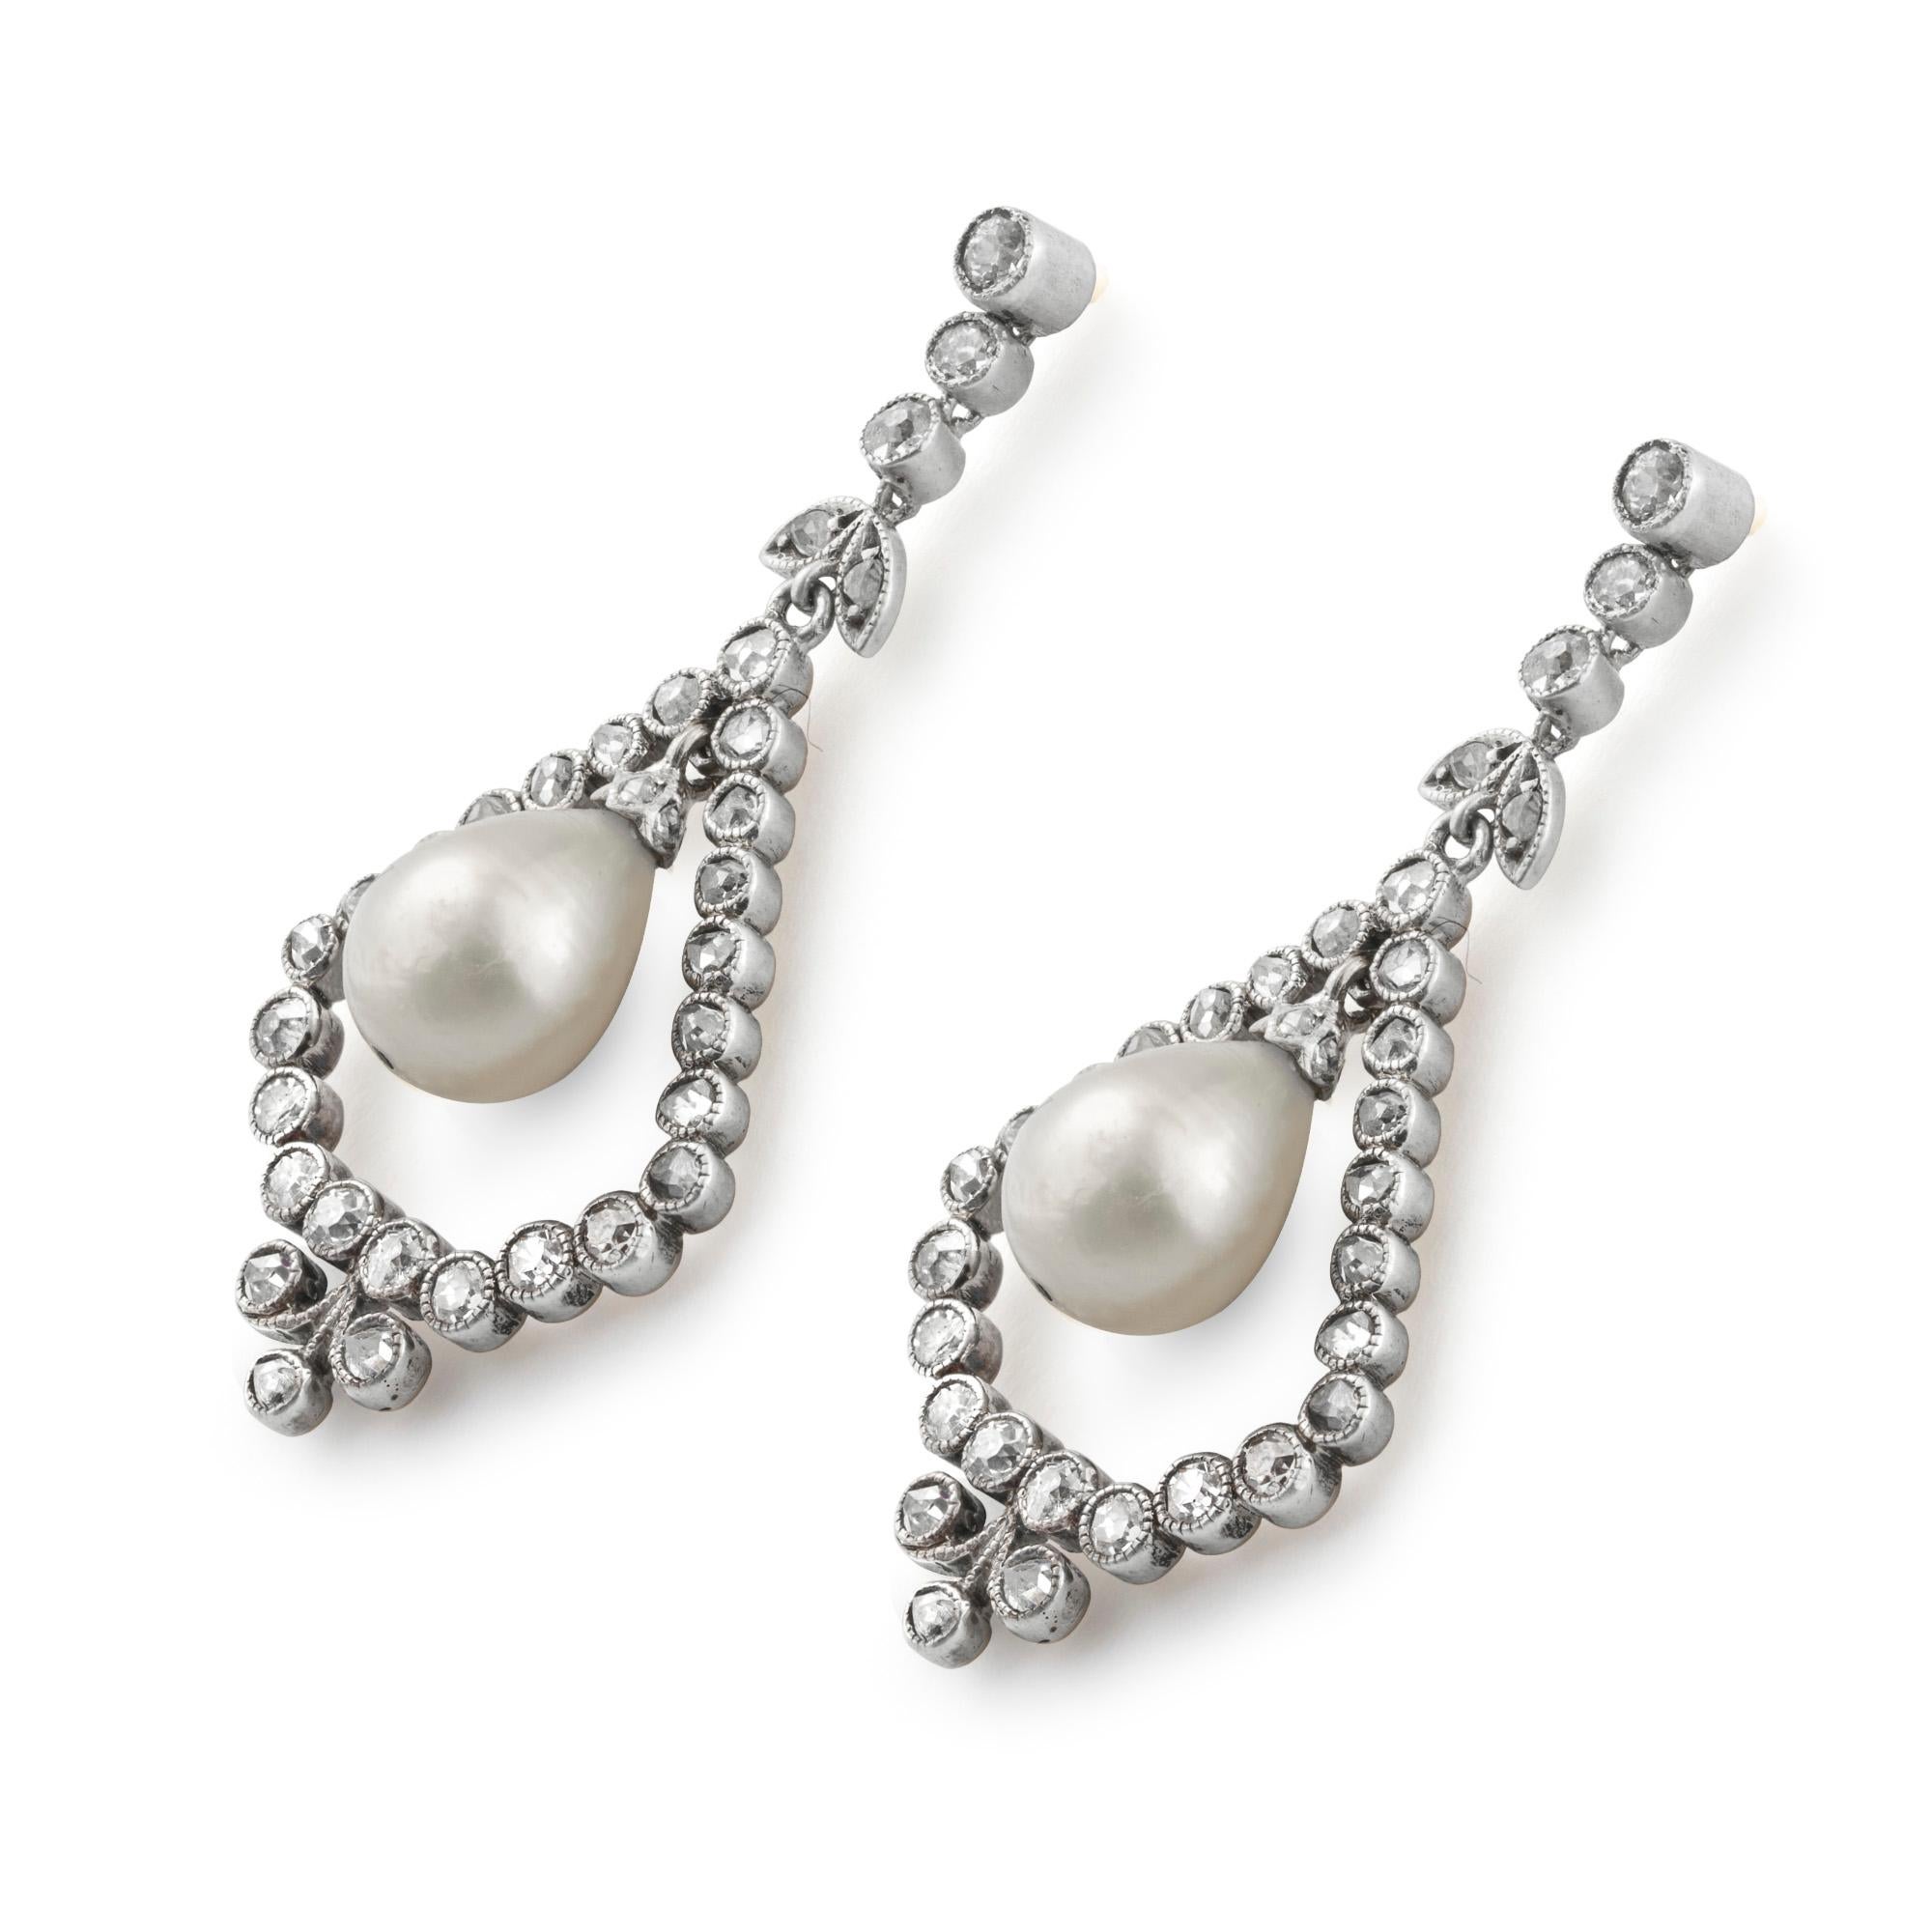 Ein Paar edwardianische Ohrringe mit natürlichen Perlen und Diamanten, jeder Ohrring besteht aus einem natürlichen Perlentropfen, begleitet von GCS-Bericht Nummer 5776-5788, der besagt, dass die beiden Perlen 7,6 - 7,7 x 9,2 mm und 7,4 - 7,6 x 9.3